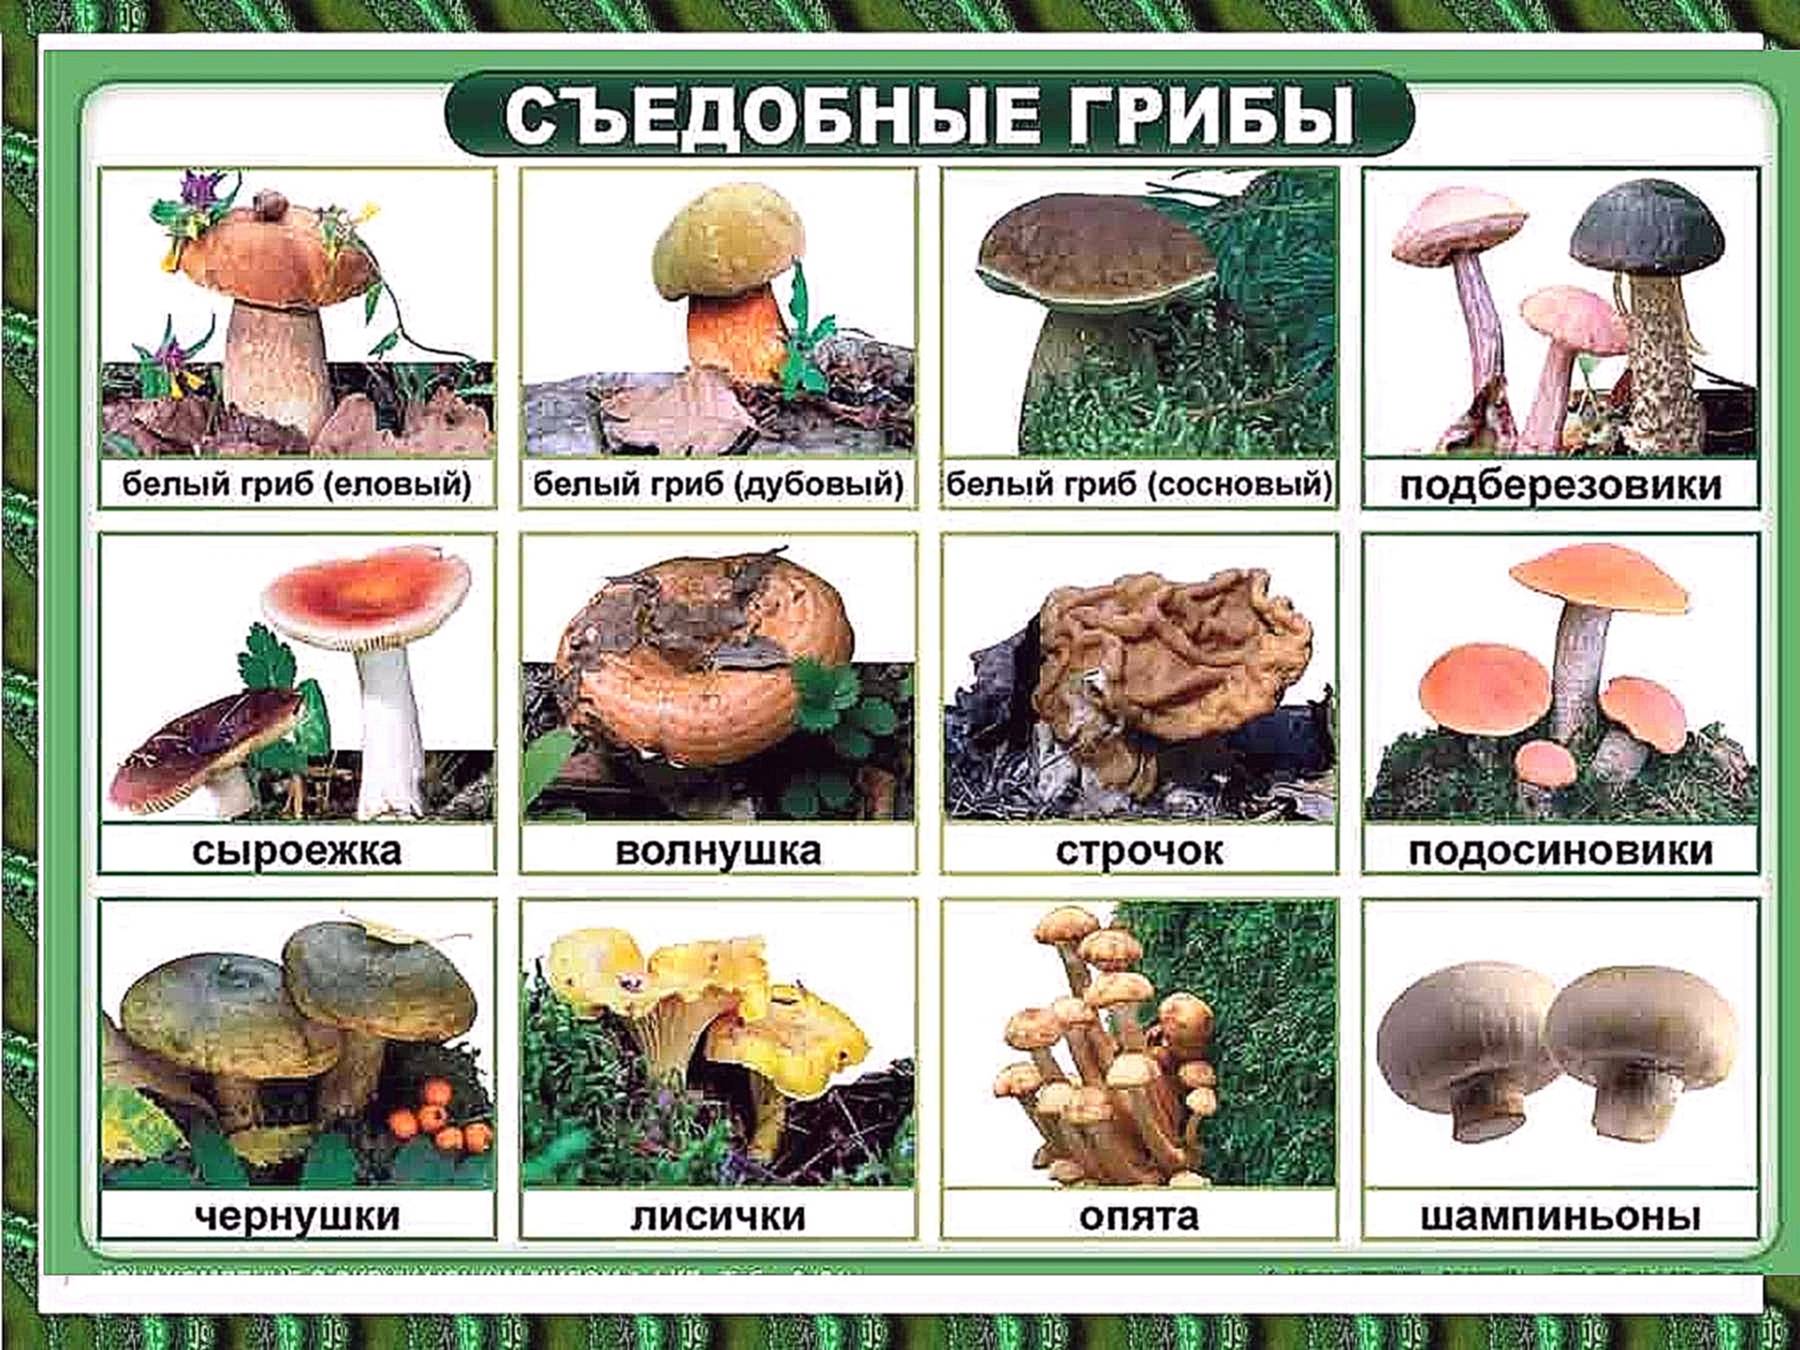 Заливные пироги с грибами: фото и рецепты простых заливных пирогов с грибной начинкой